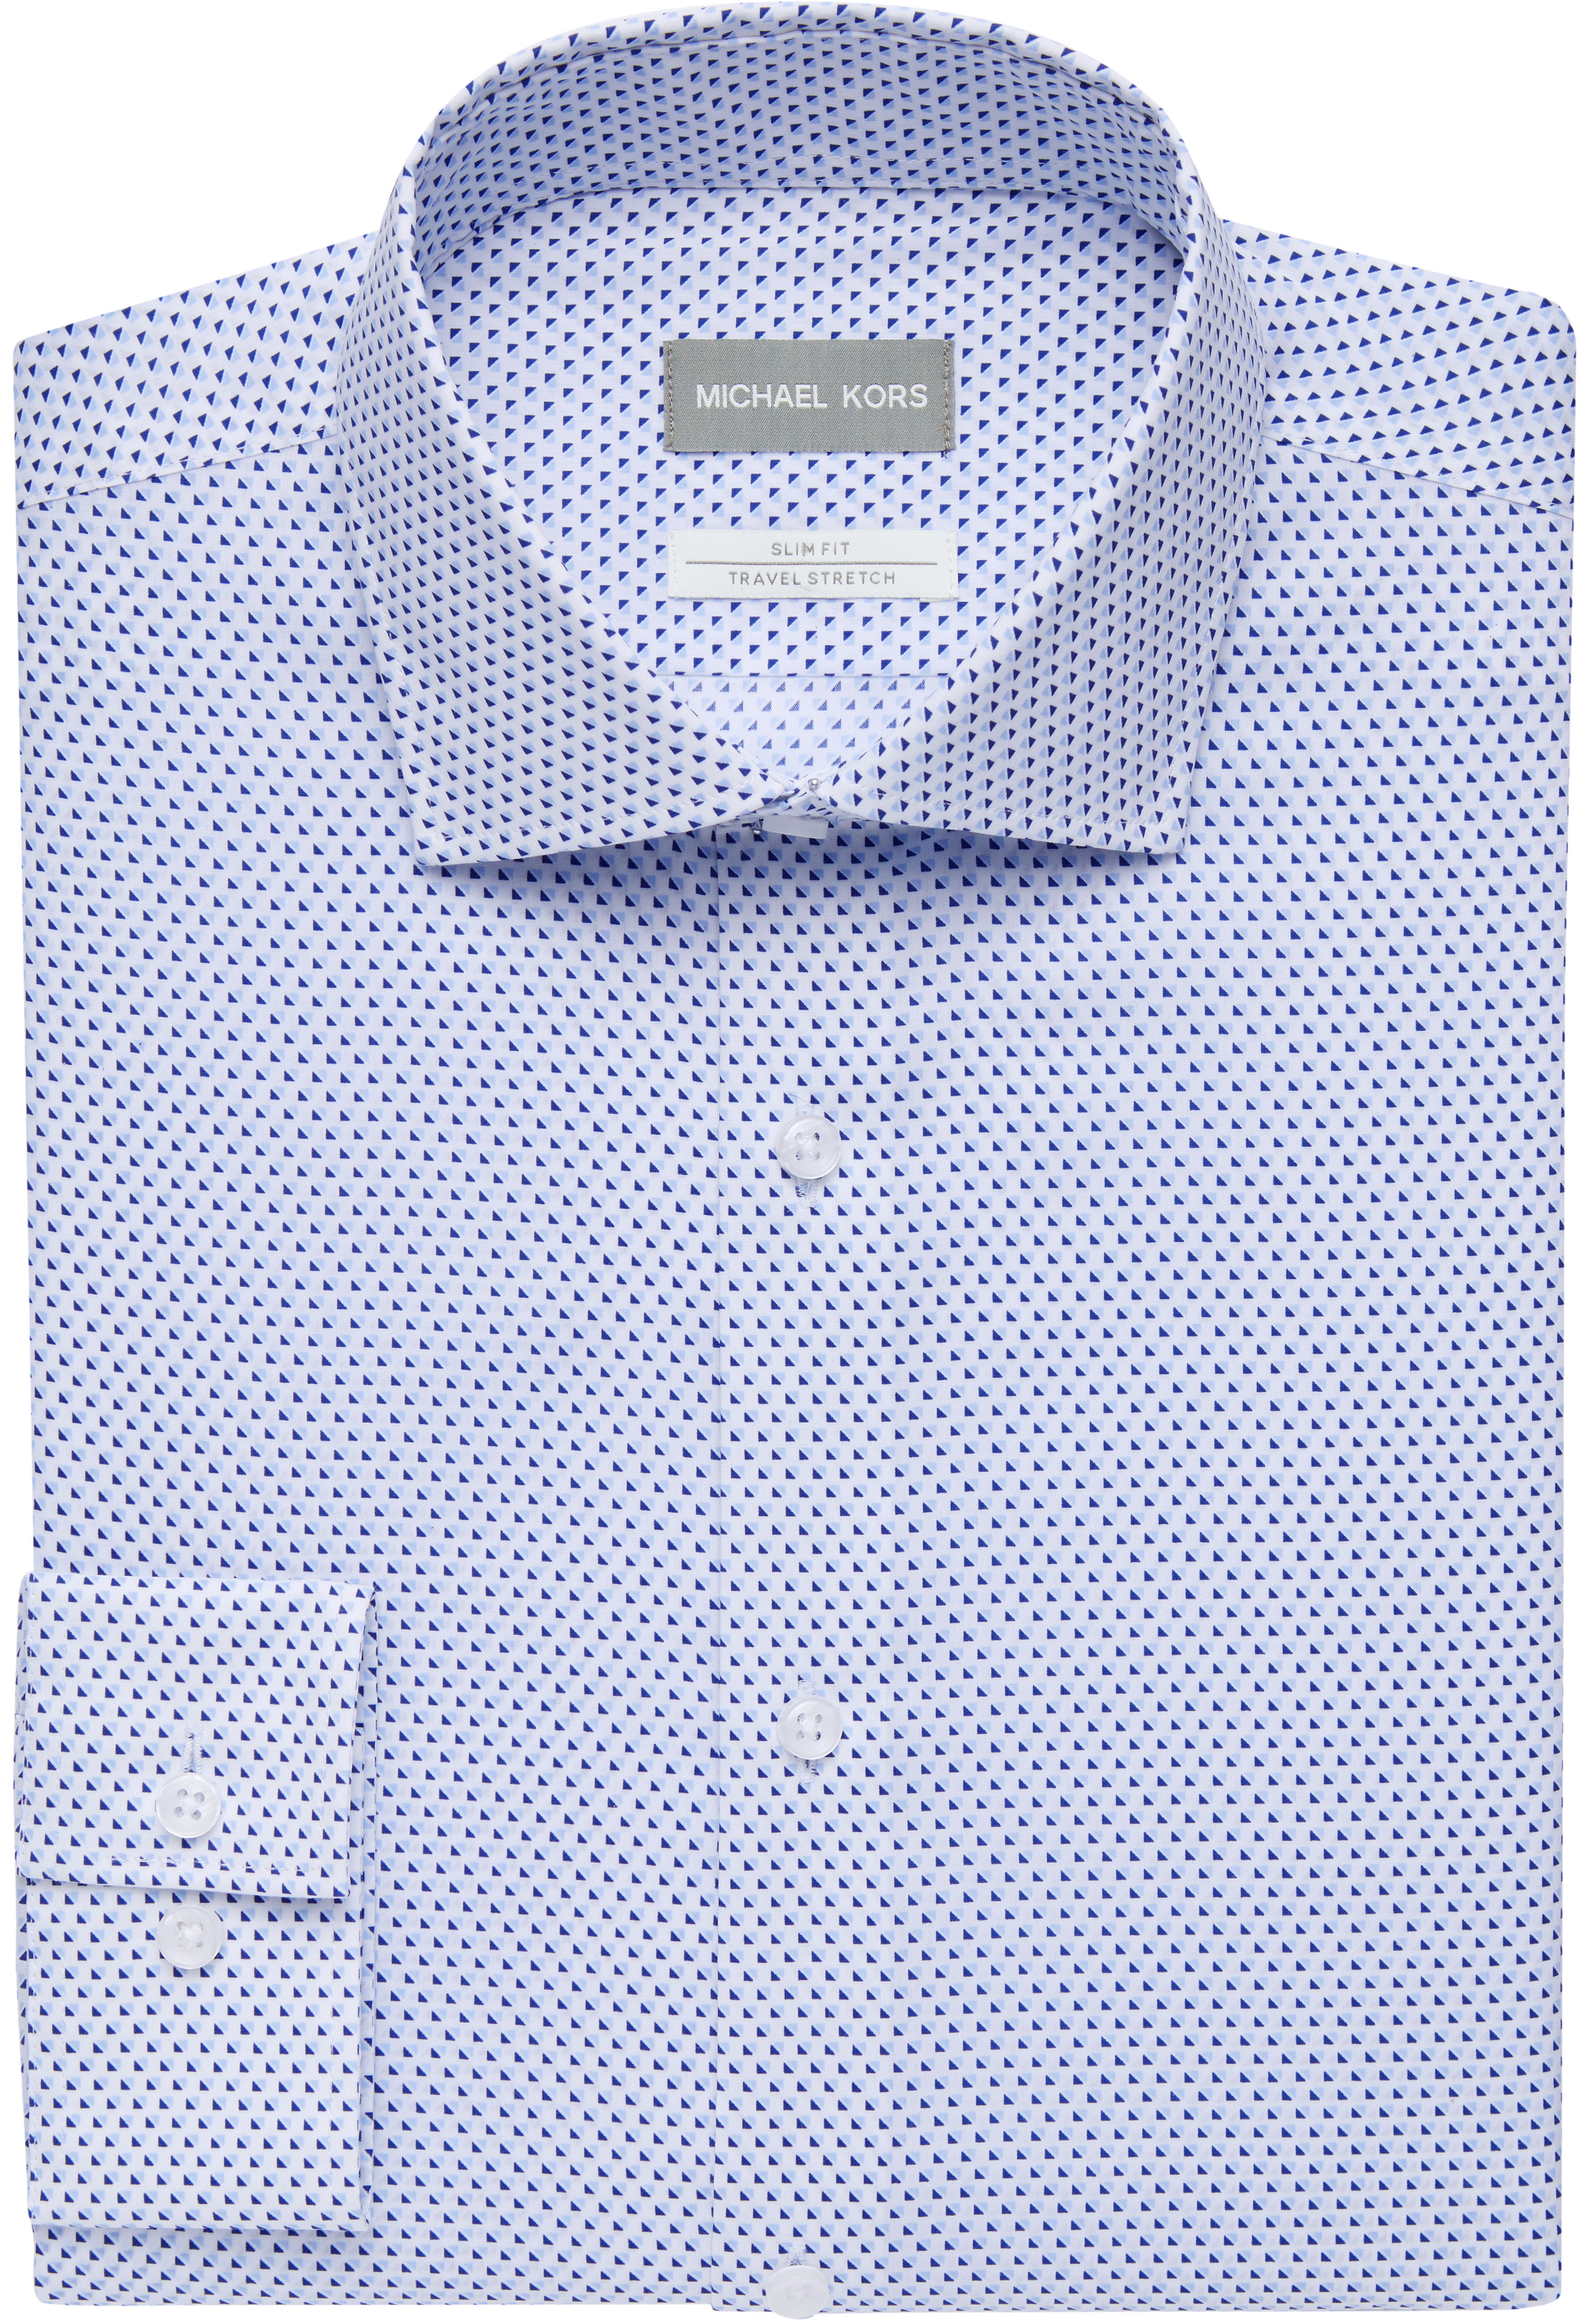 Michael Kors Blue Print Slim Fit Stretch Dress Shirt - Men's Sale | Men's  Wearhouse